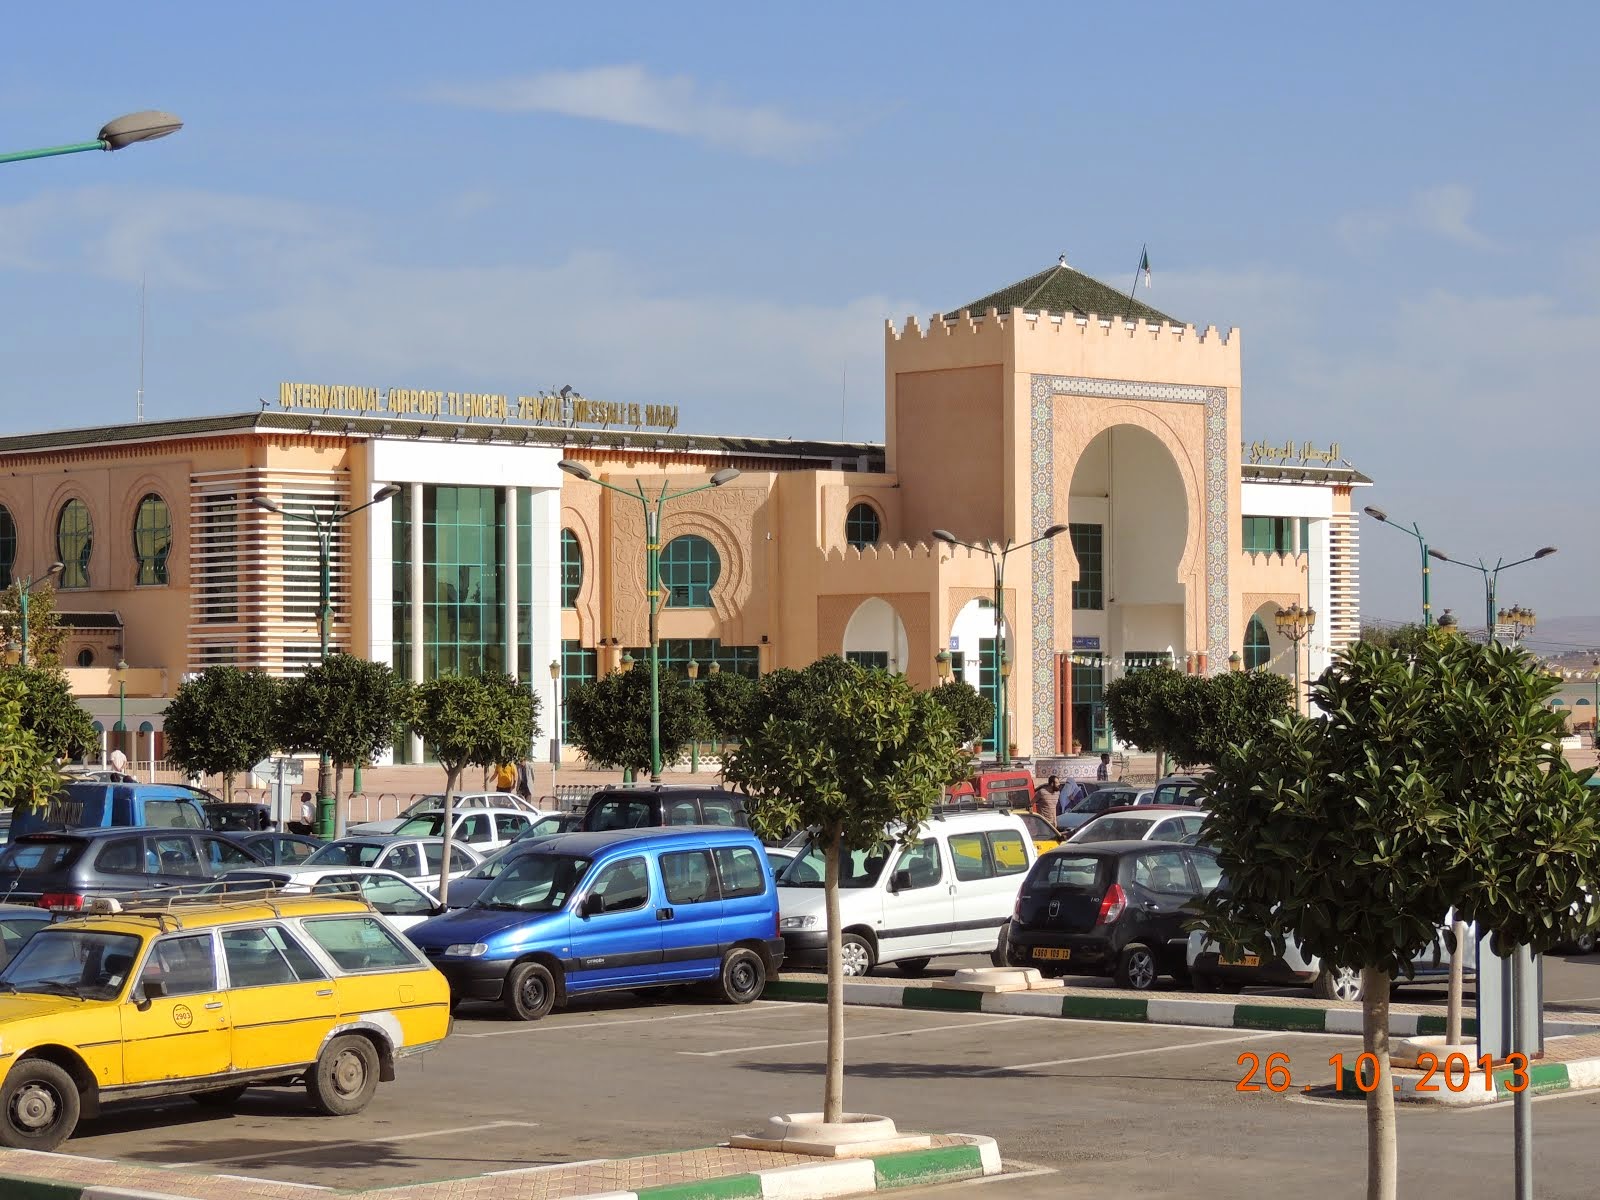 Aéroport de Tlemcen